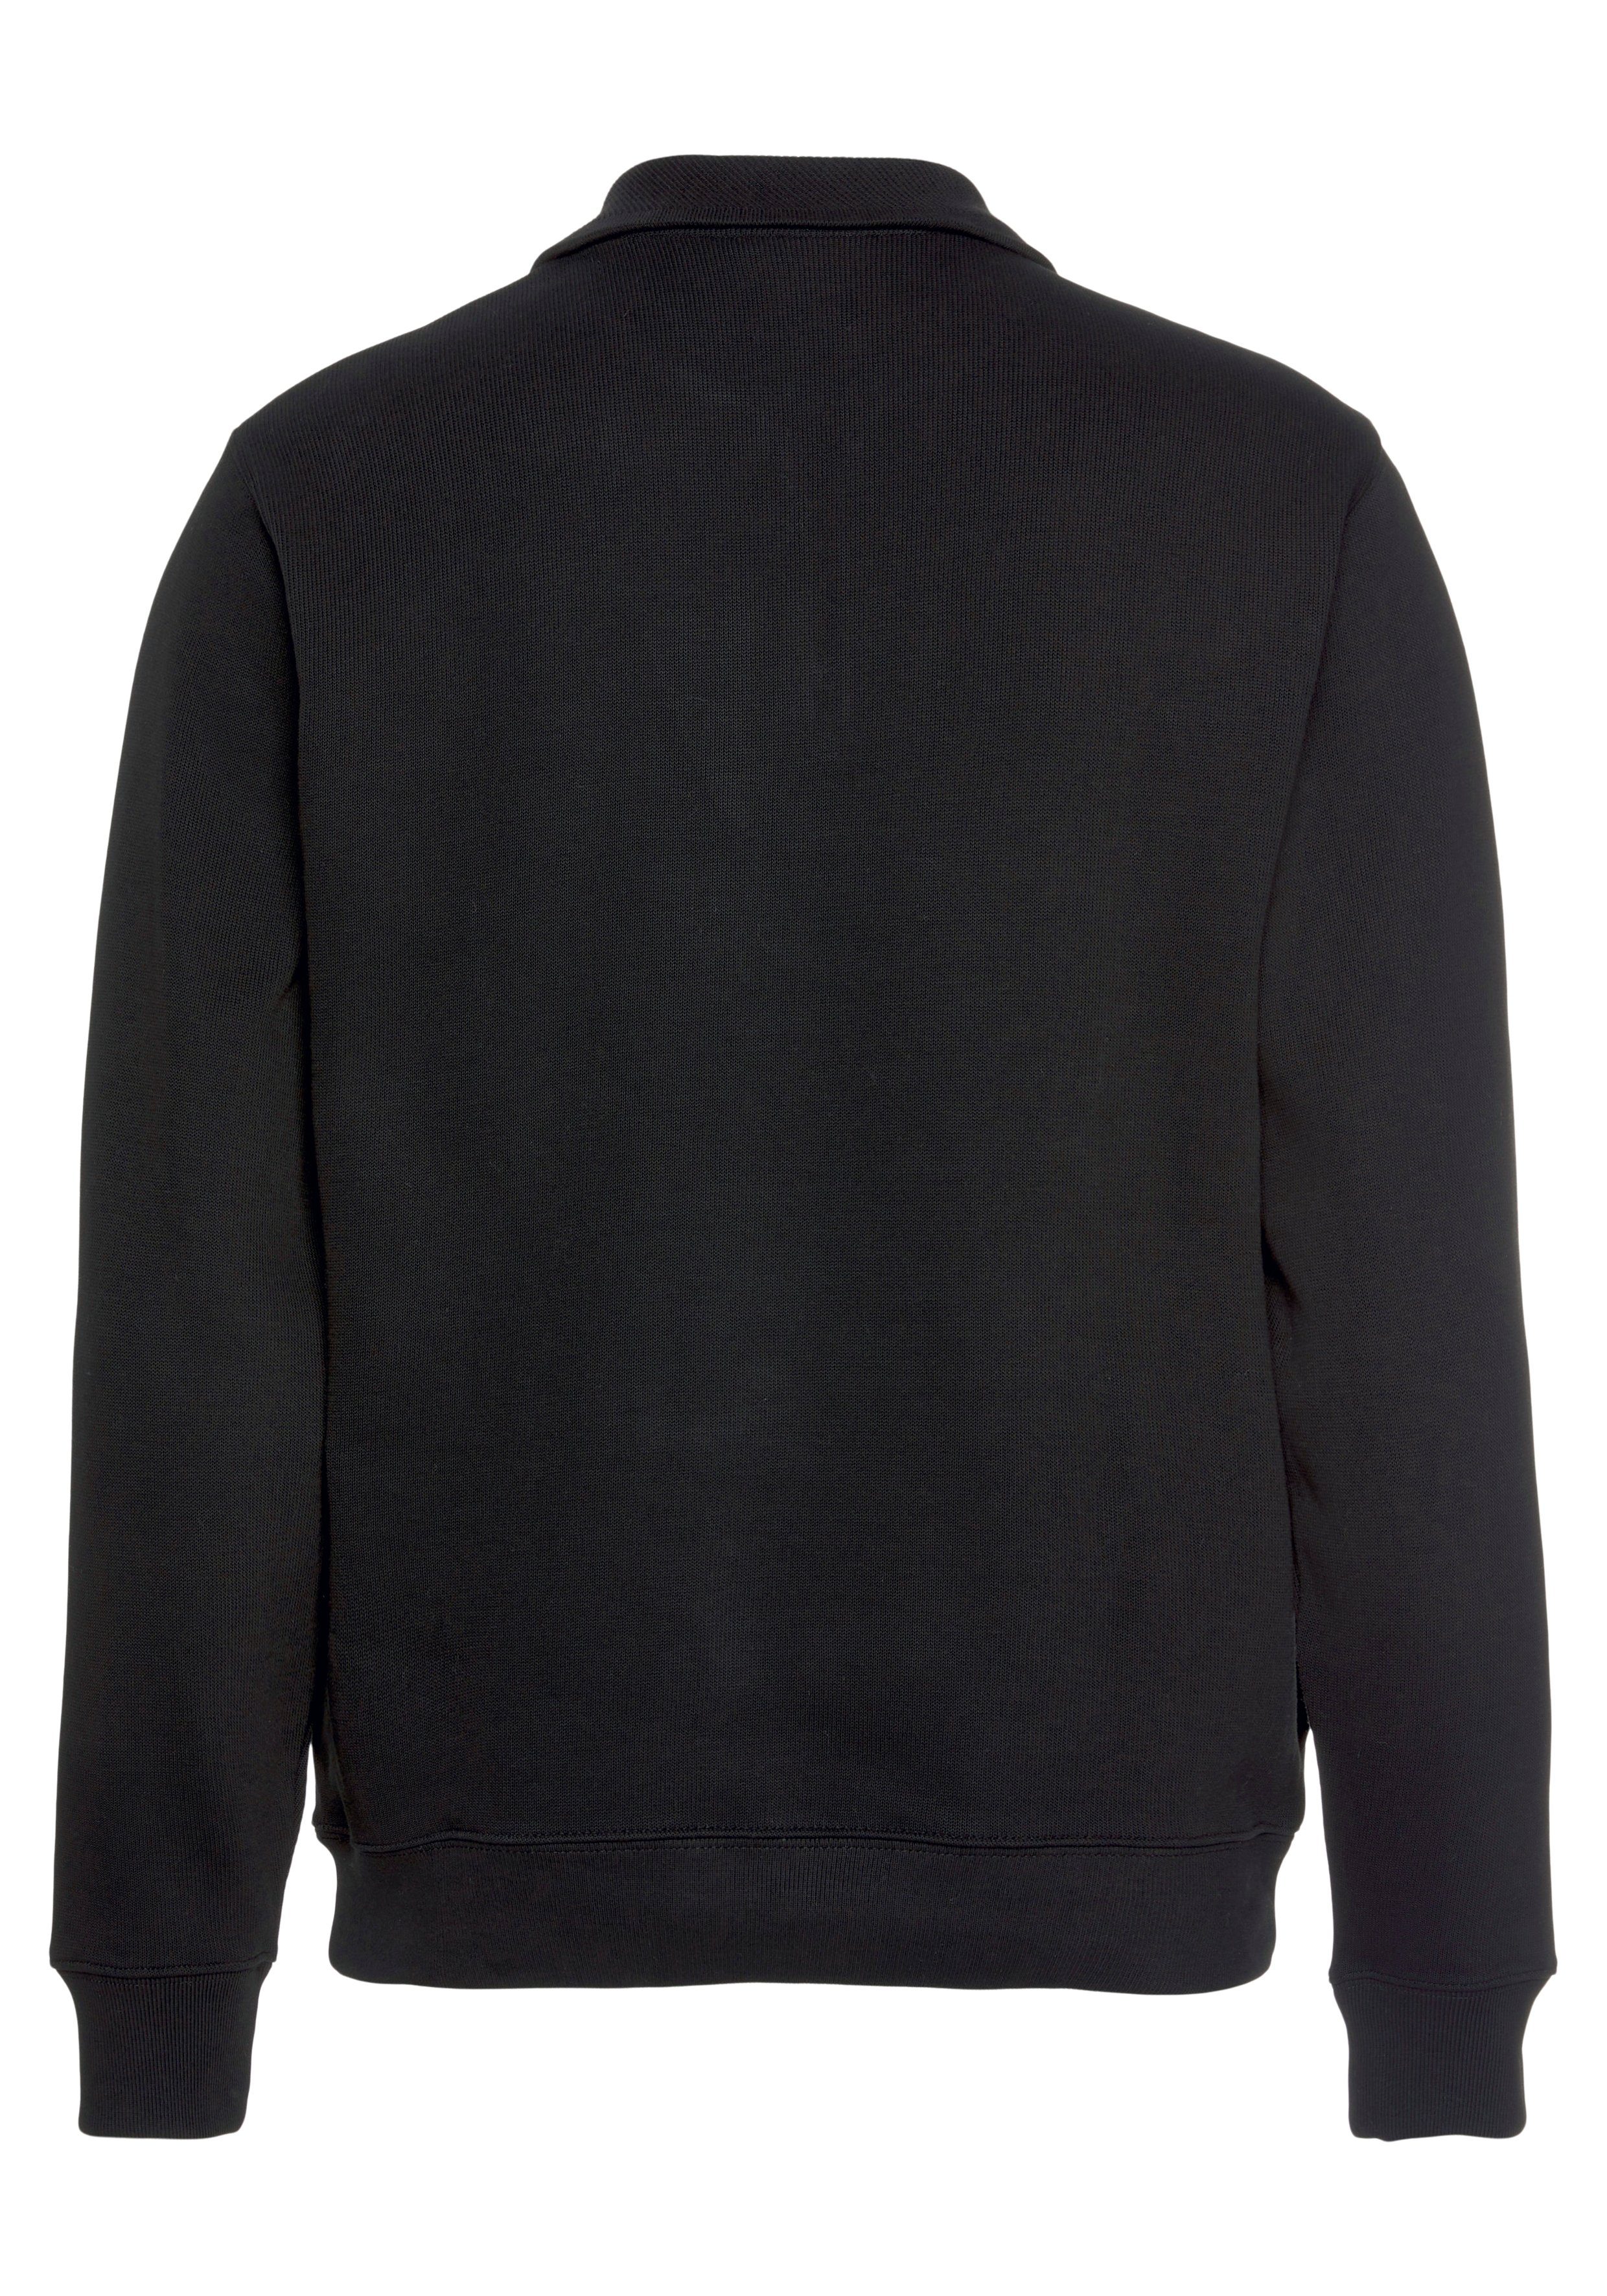 Sweattroyer black mit Lacoste Stehkragen Sweatshirt